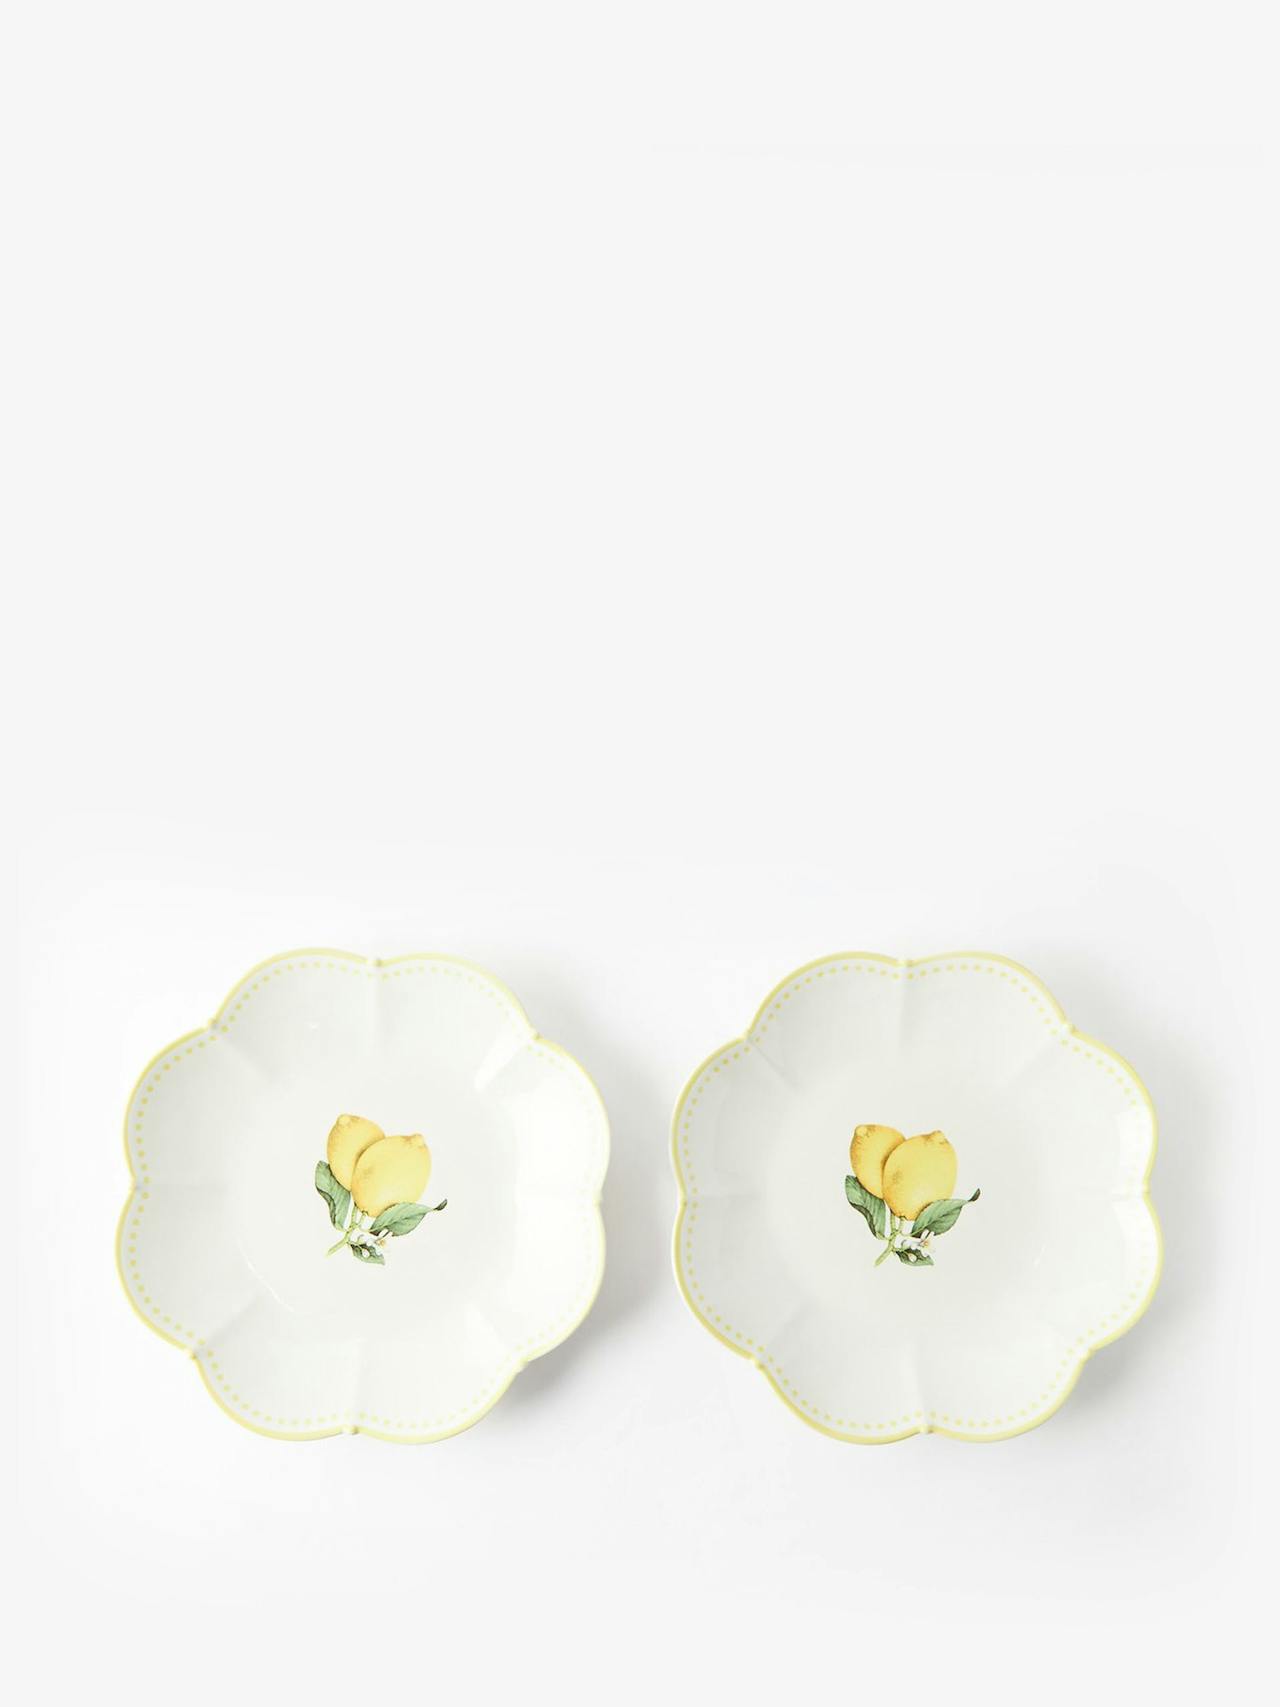 Tutti Fruitti Lemon dinner plates (set of 2)